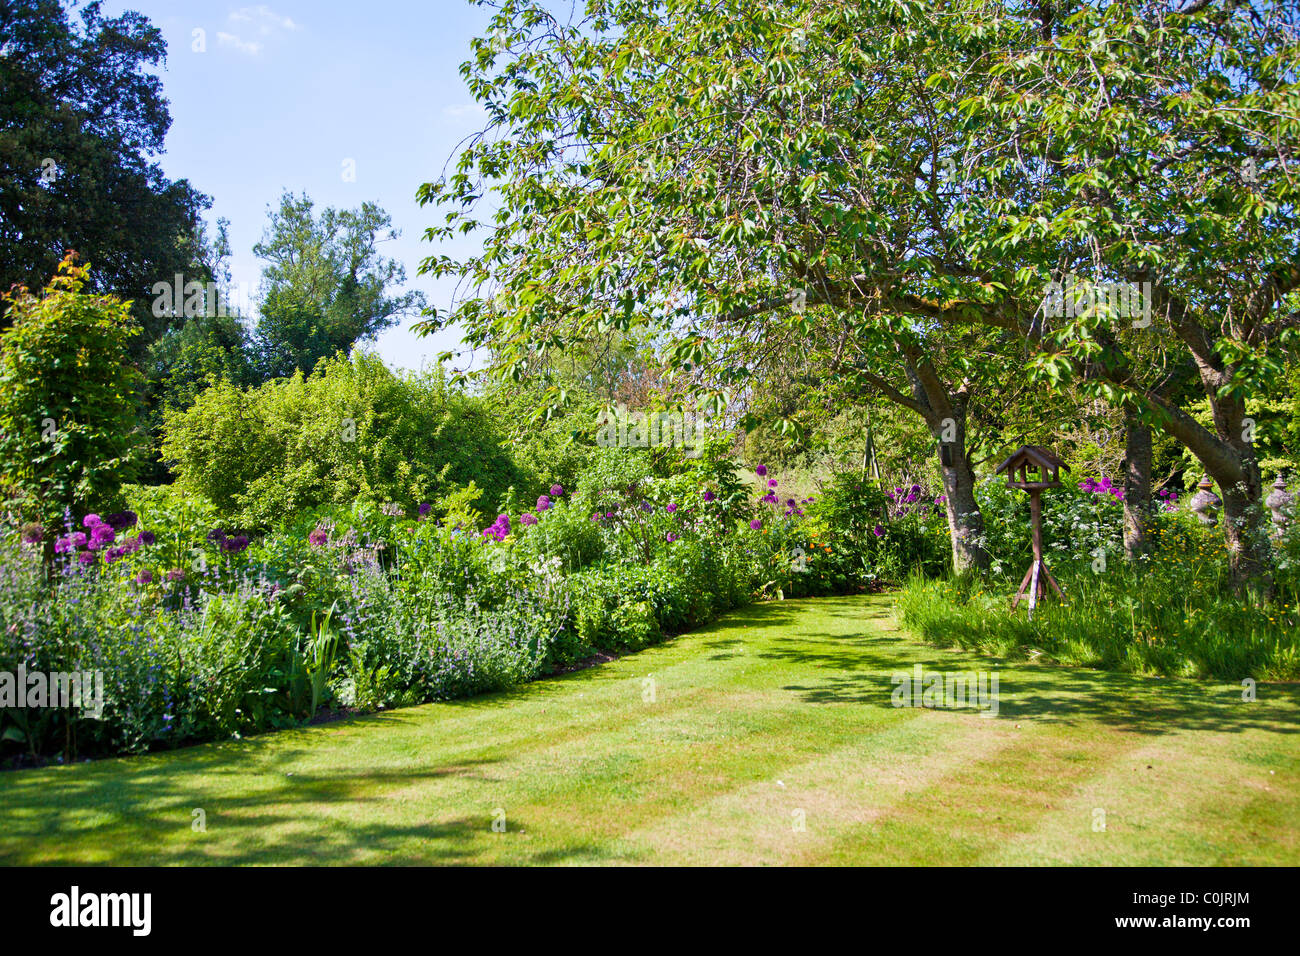 Blumenbeete oder Betten rund um einen gestreiften Rasen in einem englischen Landhaus-Garten im Sommer mit hölzernen Vogel Tisch unter Bäumen. Stockfoto